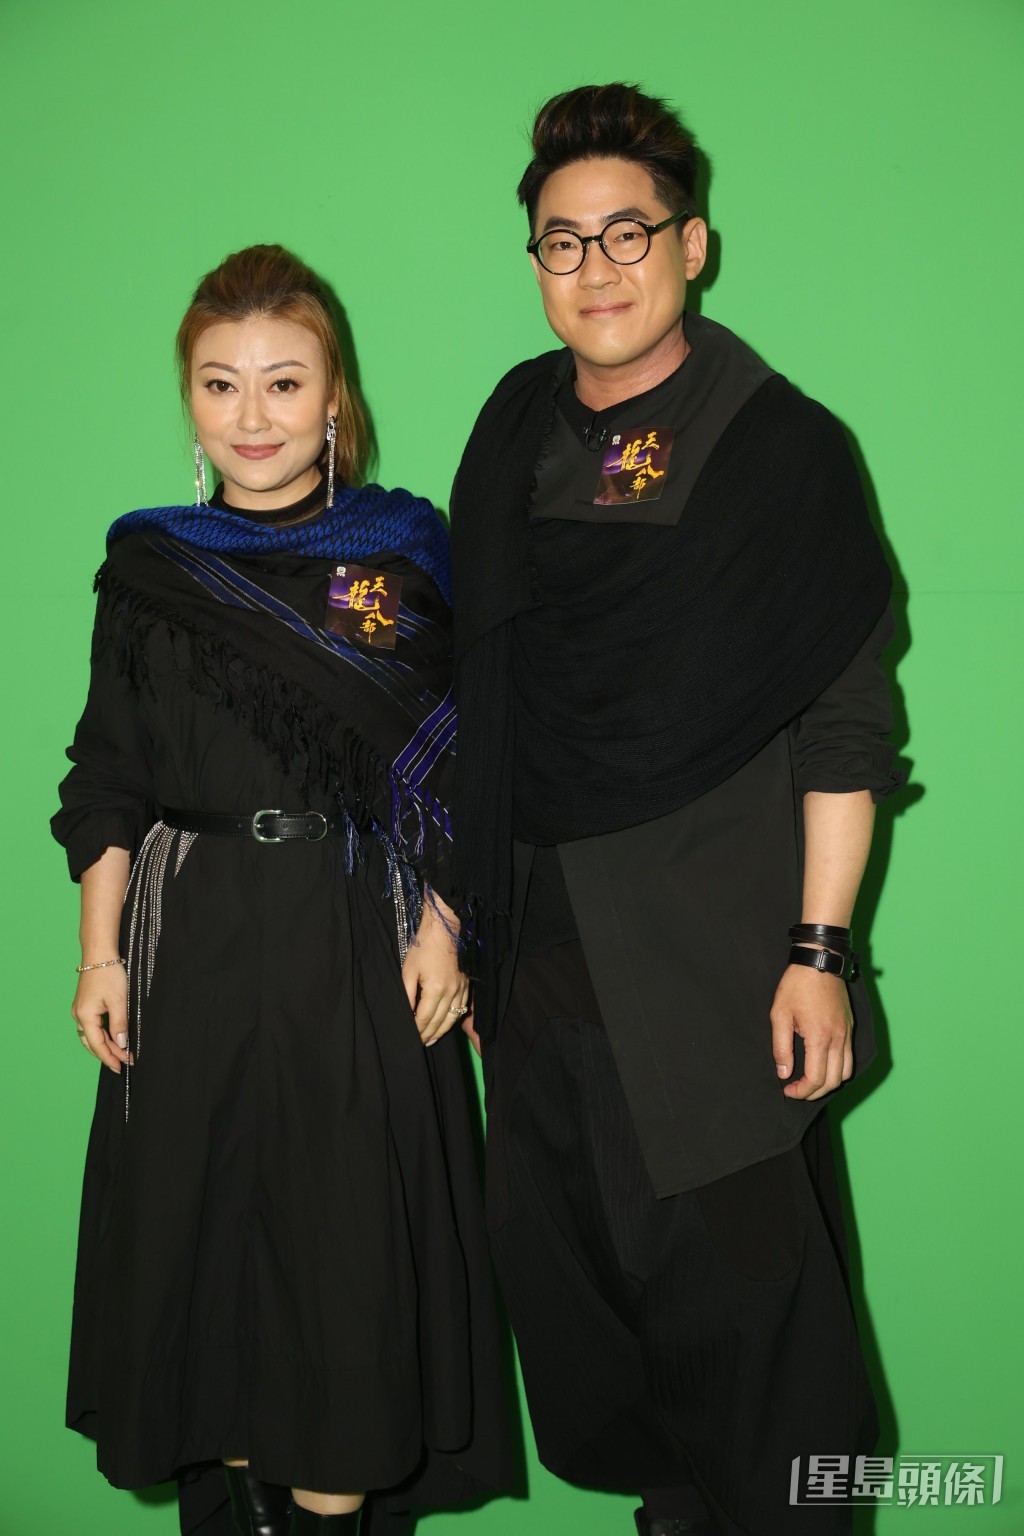 李佳與羅啟豪為劇集《天龍八部》片尾曲《倆忘煙水裡》拍攝MV。